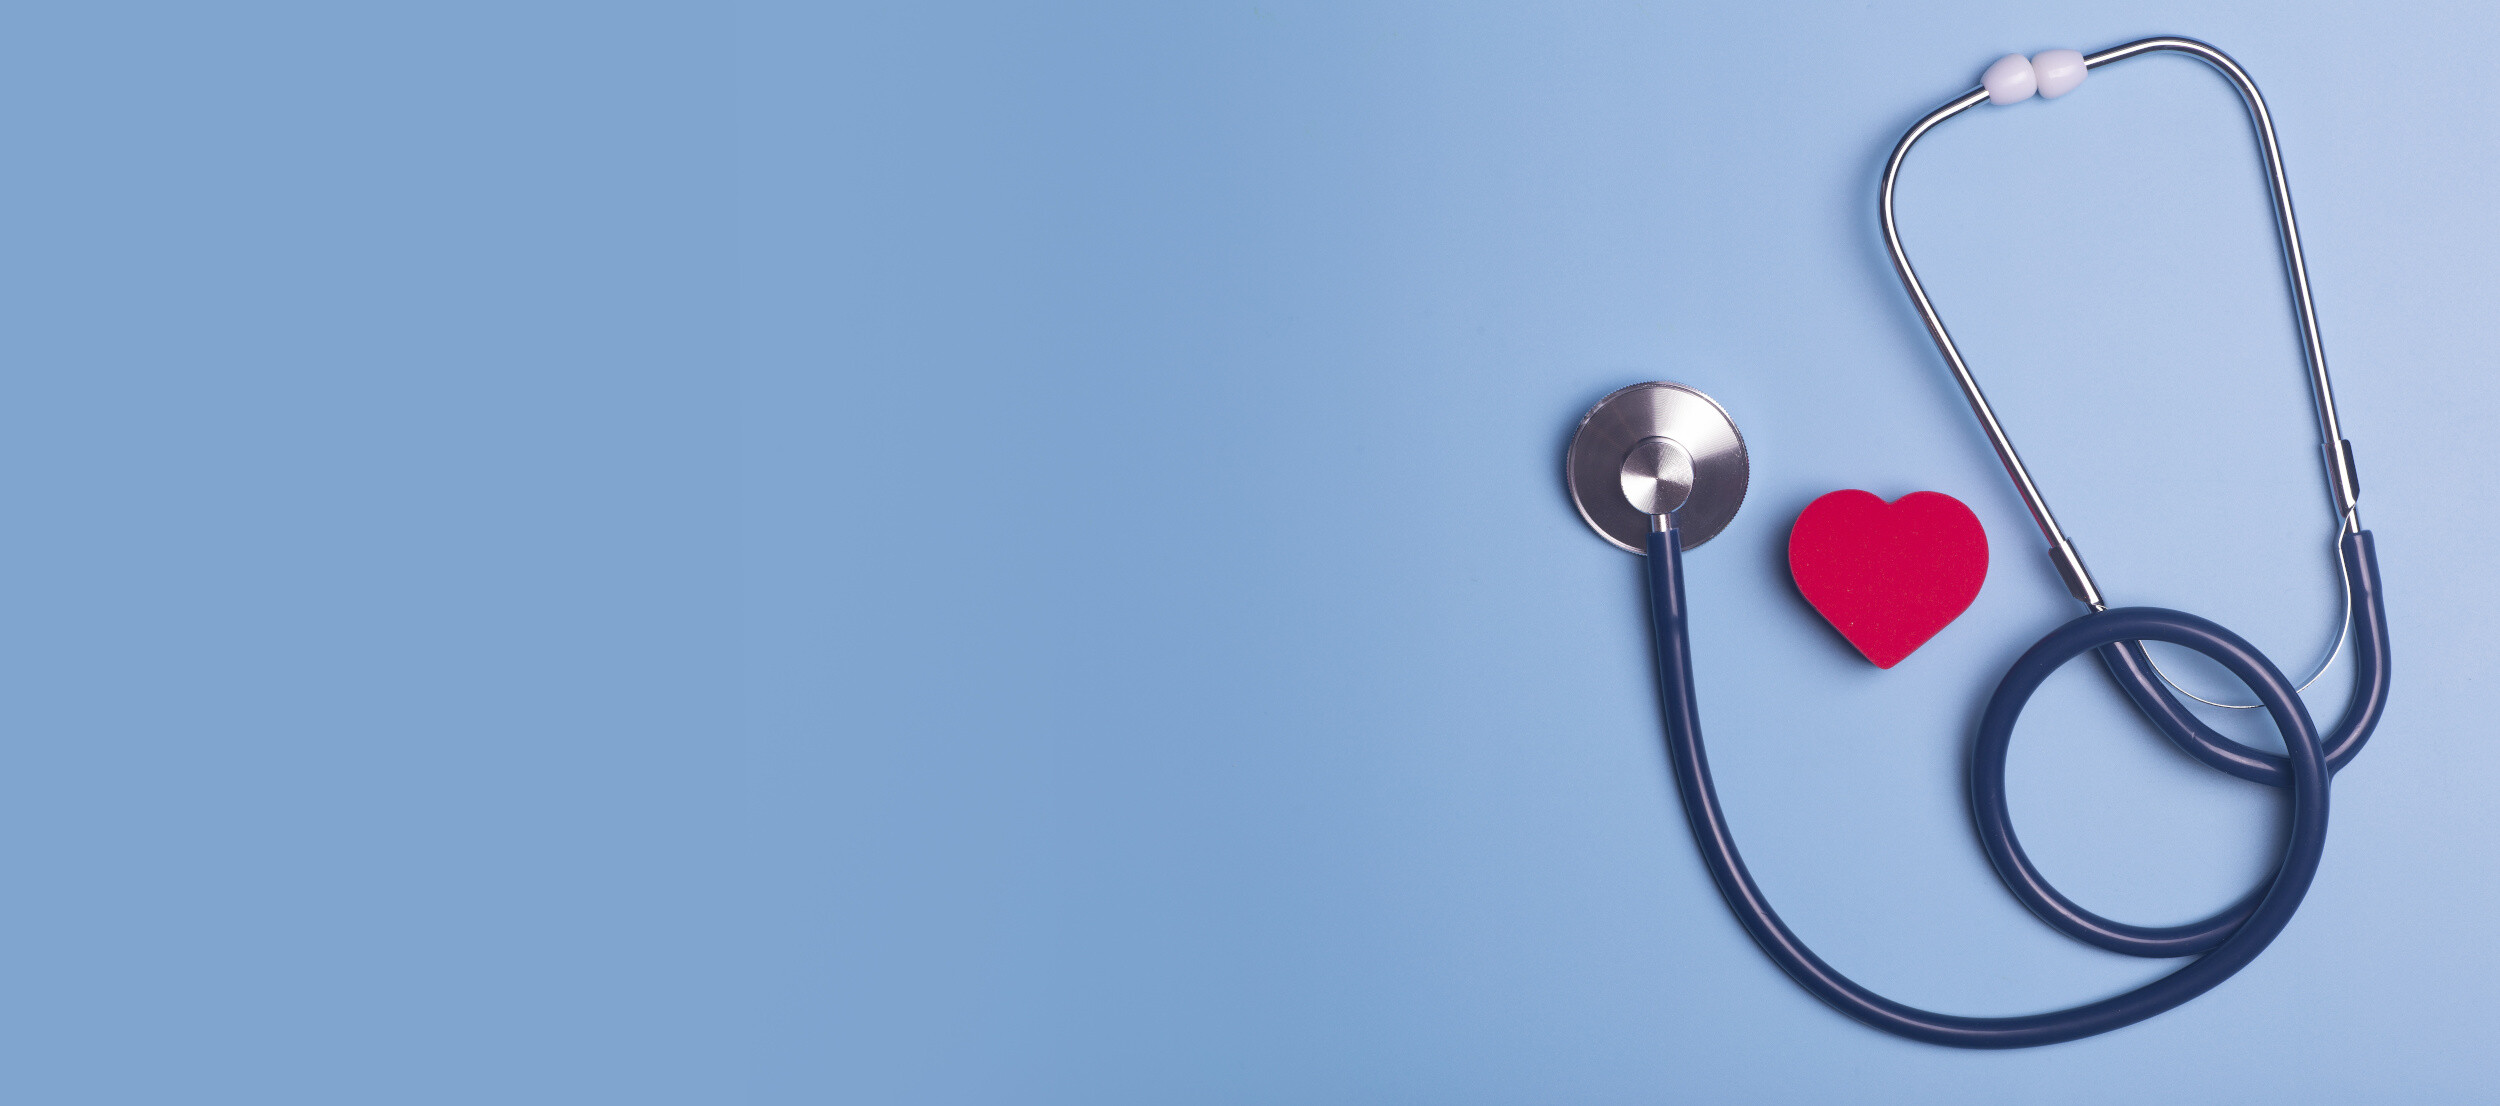 Stetoskop und ein rotes Herz auf blauem Hintergrund